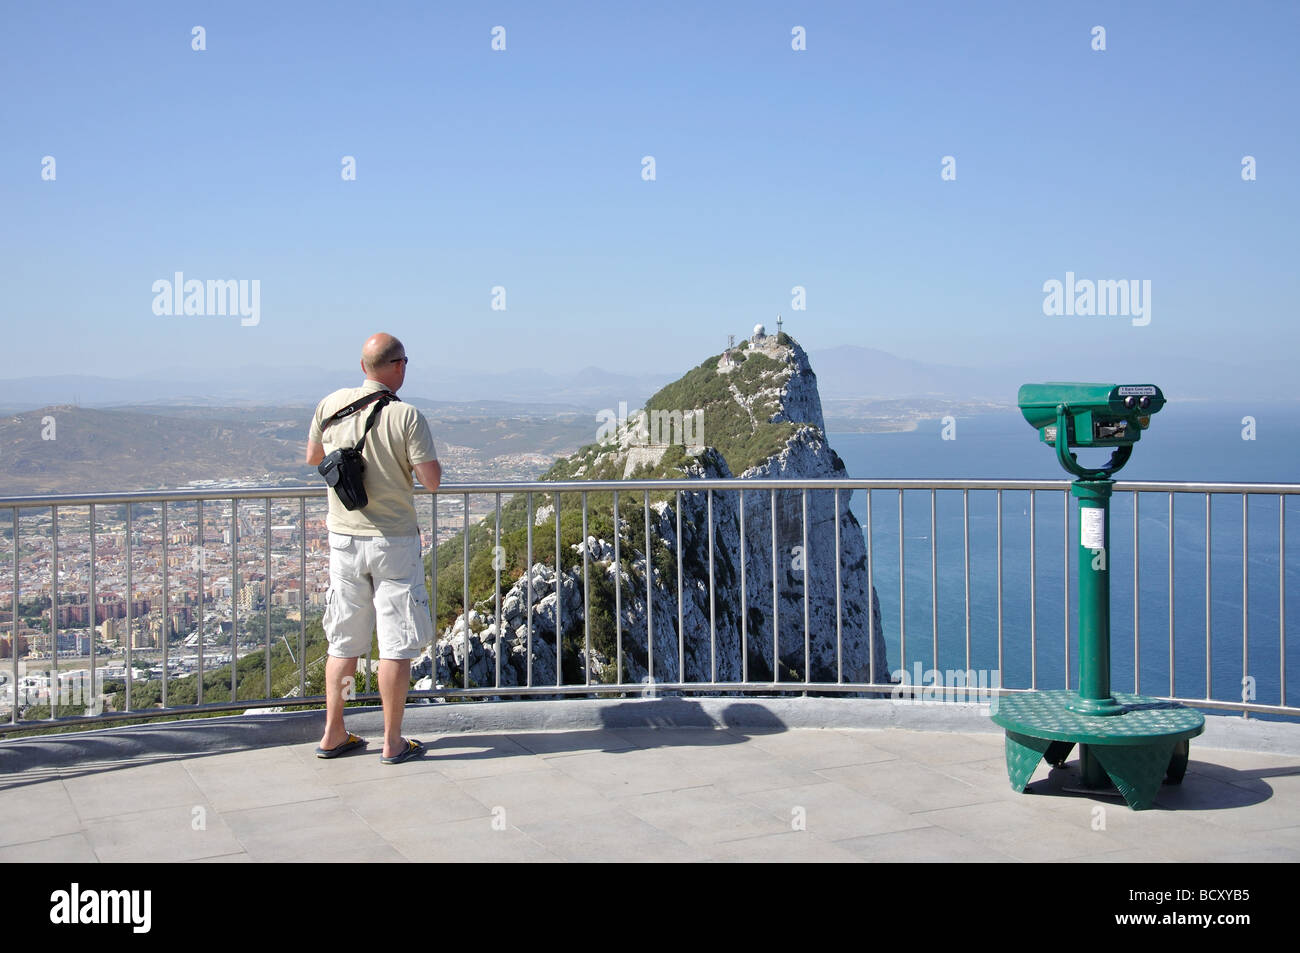 Spanische Festland und Felsen von Gibraltar aus Lenea Rock Lookout, Felsen von Gibraltar, Gibraltar Stockfoto